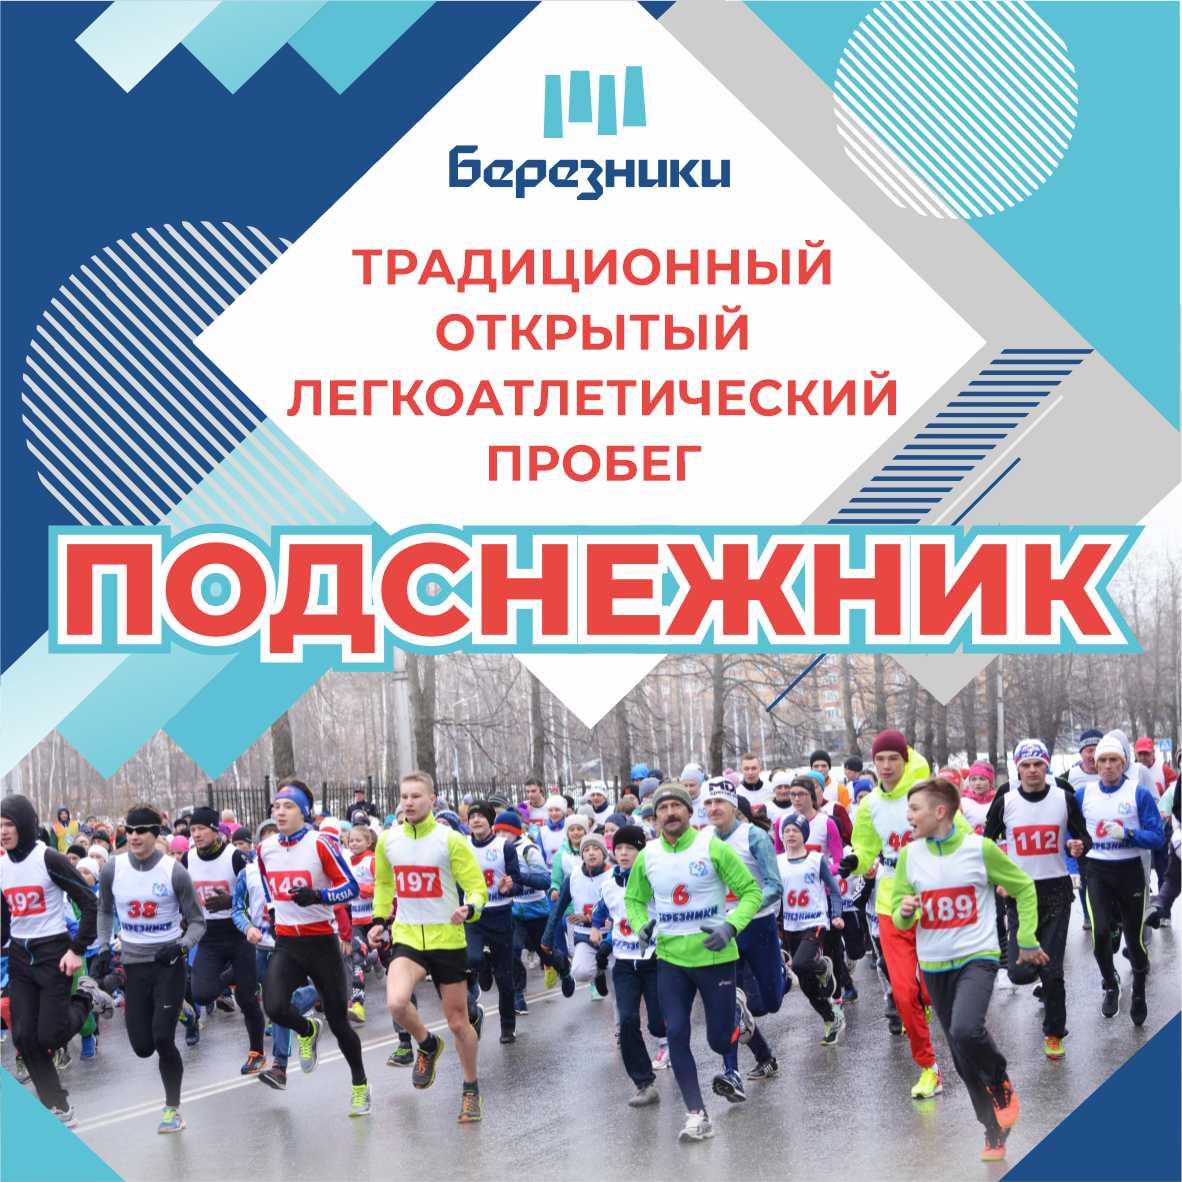 23 апреля на Советской площади встретятся бегуны со всего города на традиционном легкоатлетическом пробеге «Подснежник»